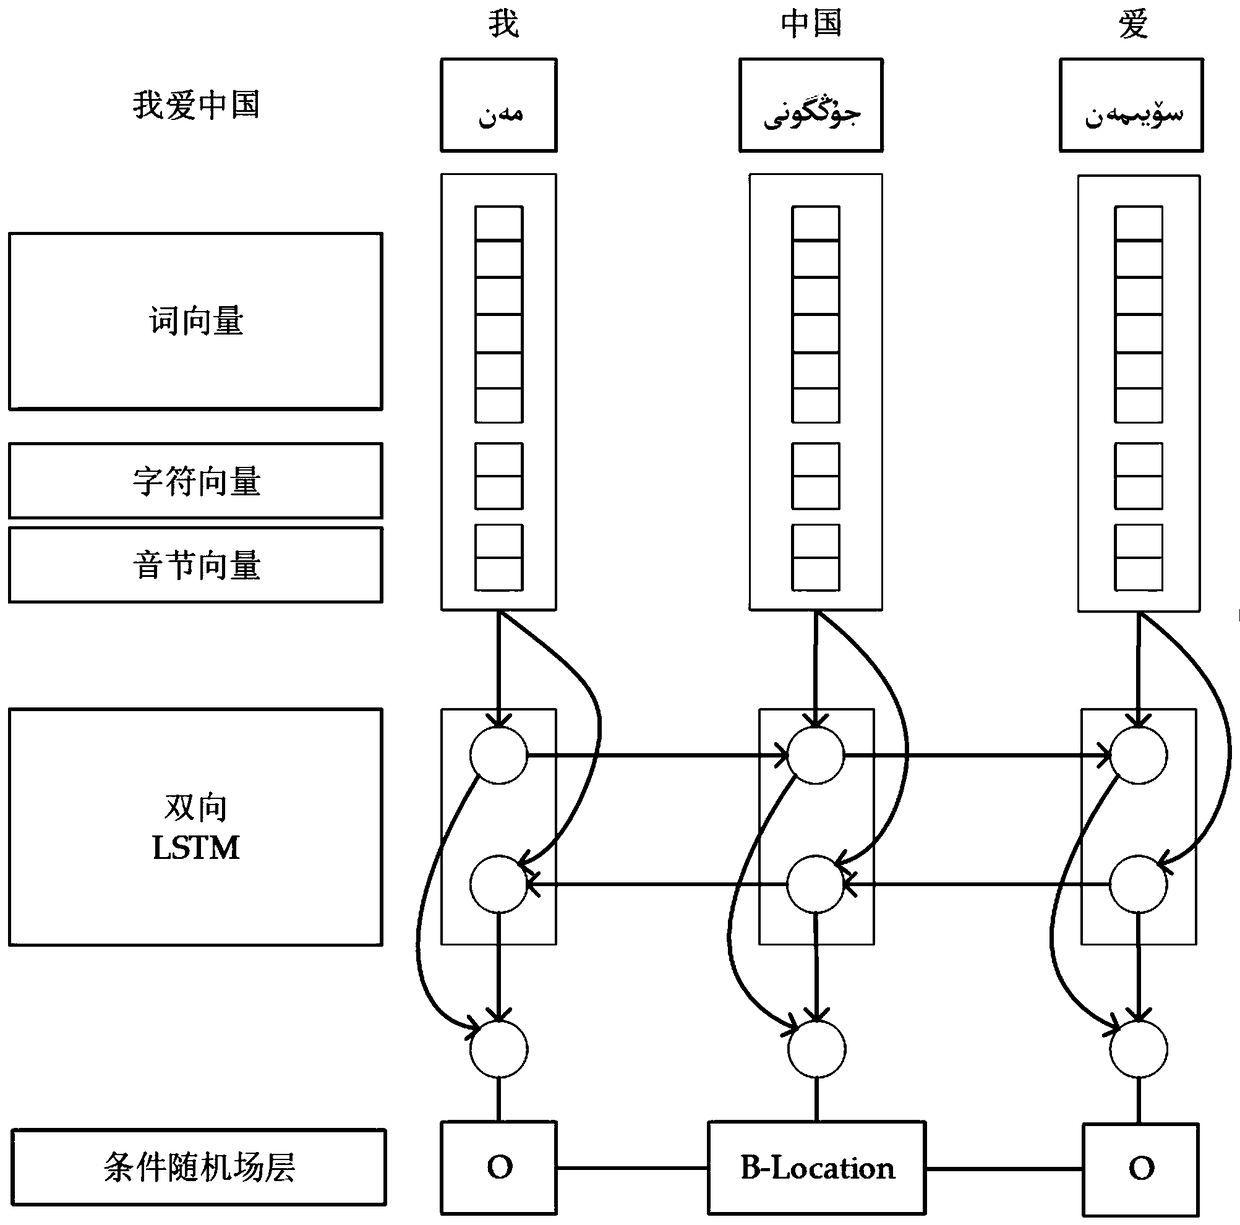 Uyghur named entity recognition method based on depth learning